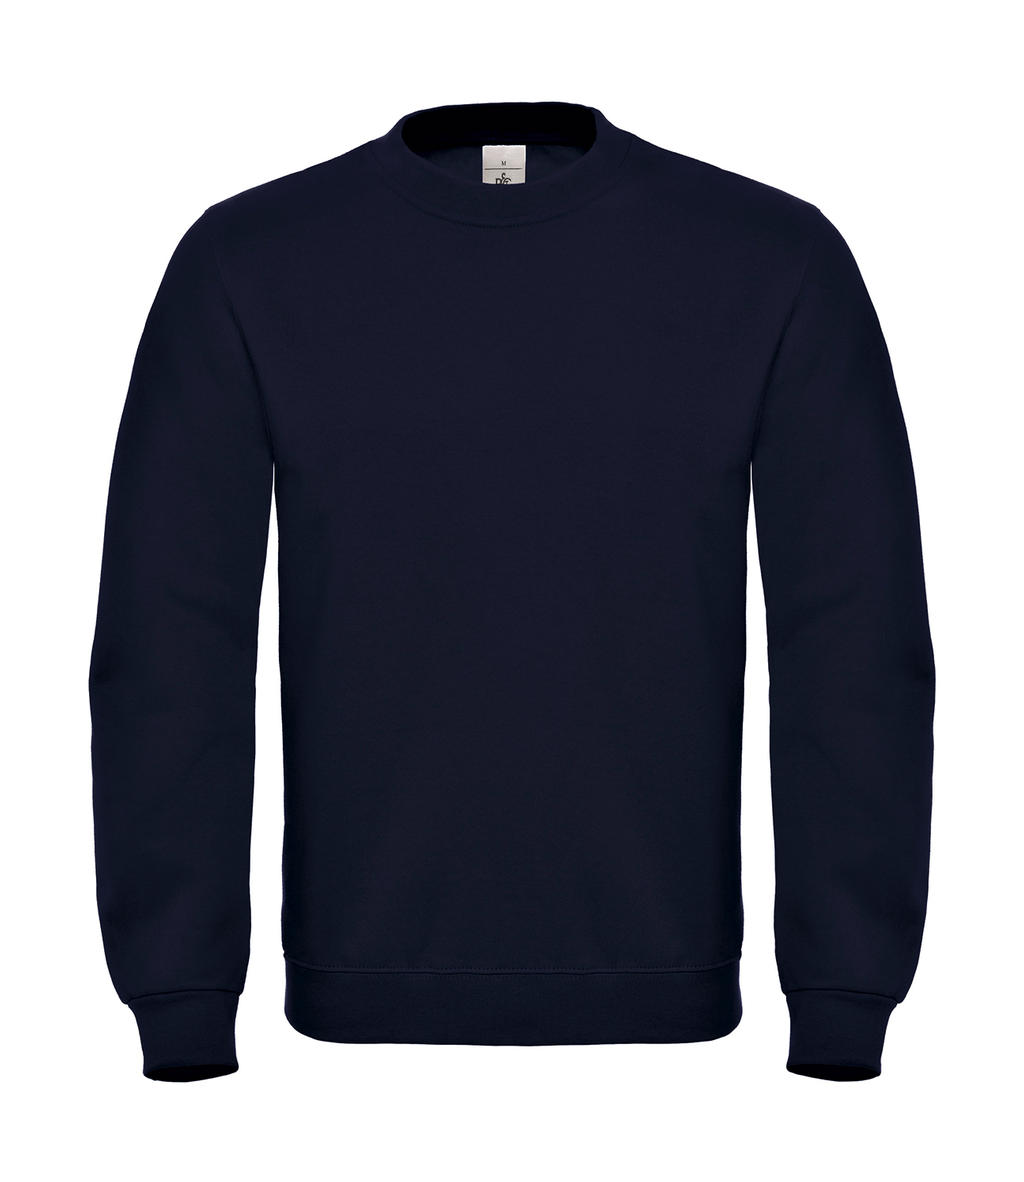  ID.002 Cotton Rich Sweatshirt  in Farbe Navy